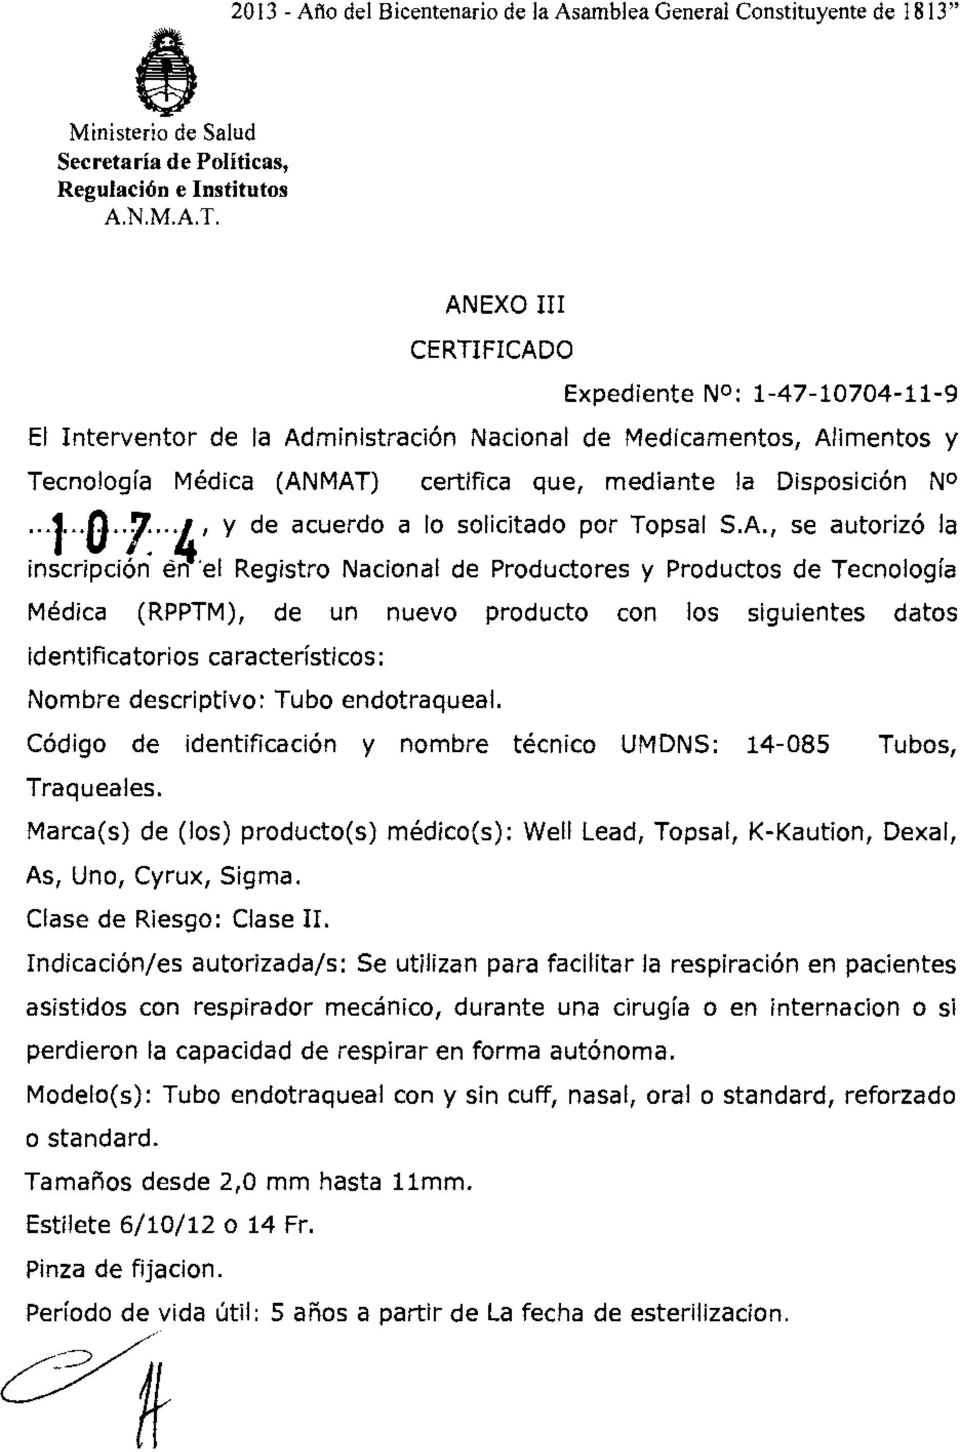 MAT) certifica que, mediante la Disposición N0 "1"0"1"4' y de acuerdo a lo solicitado por Topsal S.A., se autorizó la inscripción en 'el Registro Nacional de Productores y Productos de Tecnología